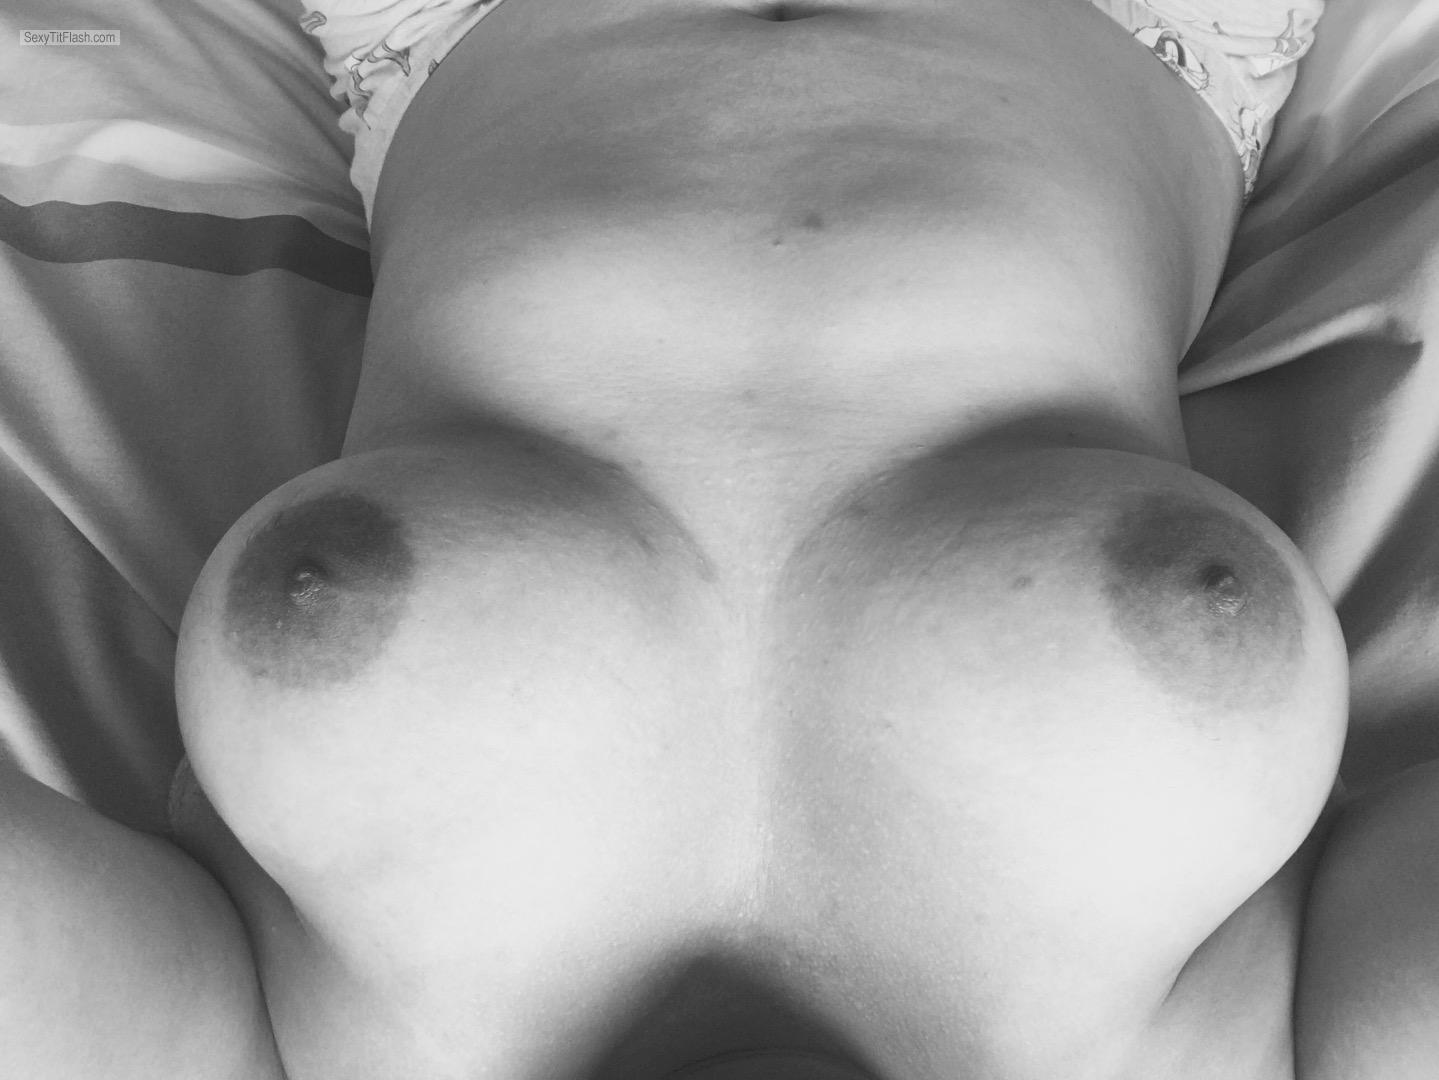 Tit Flash: My Big Tits (Selfie) - Topless Yum from United Kingdom